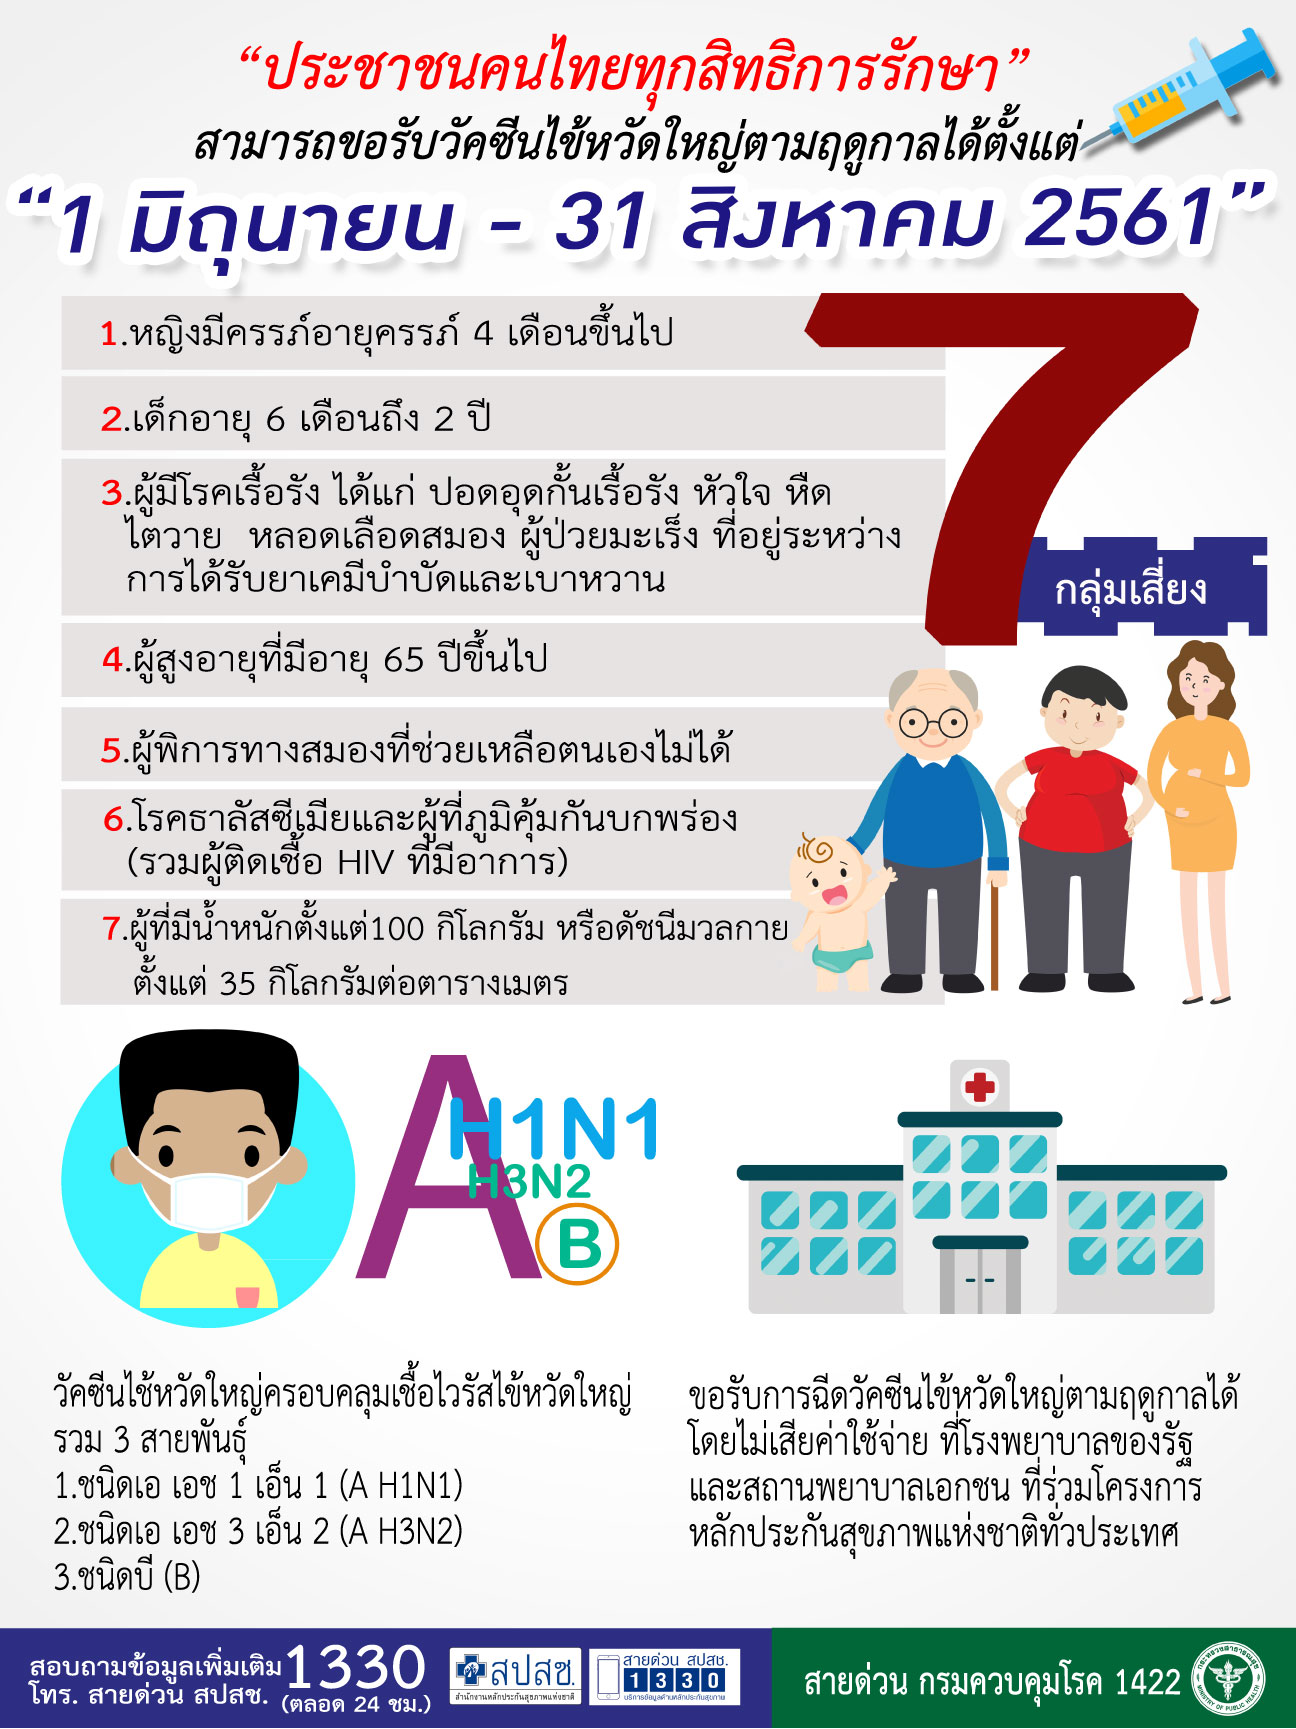 ประชาชนคนไทยทุกสิทธิการรักษา